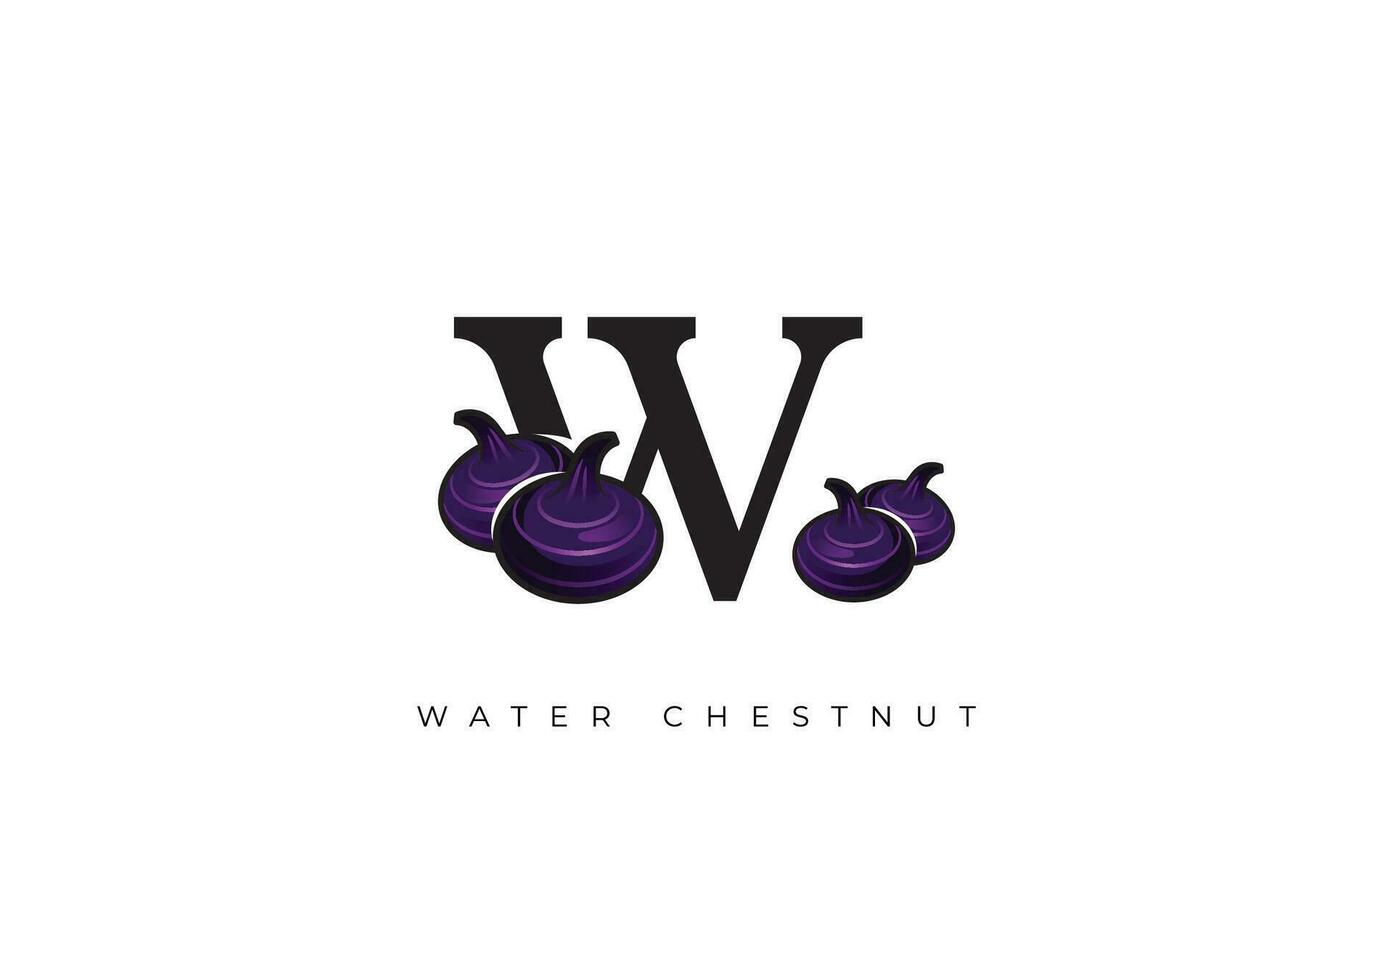 Preto água castanha fruta vetor, ótimo combinação do água castanha fruta símbolo com carta W vetor